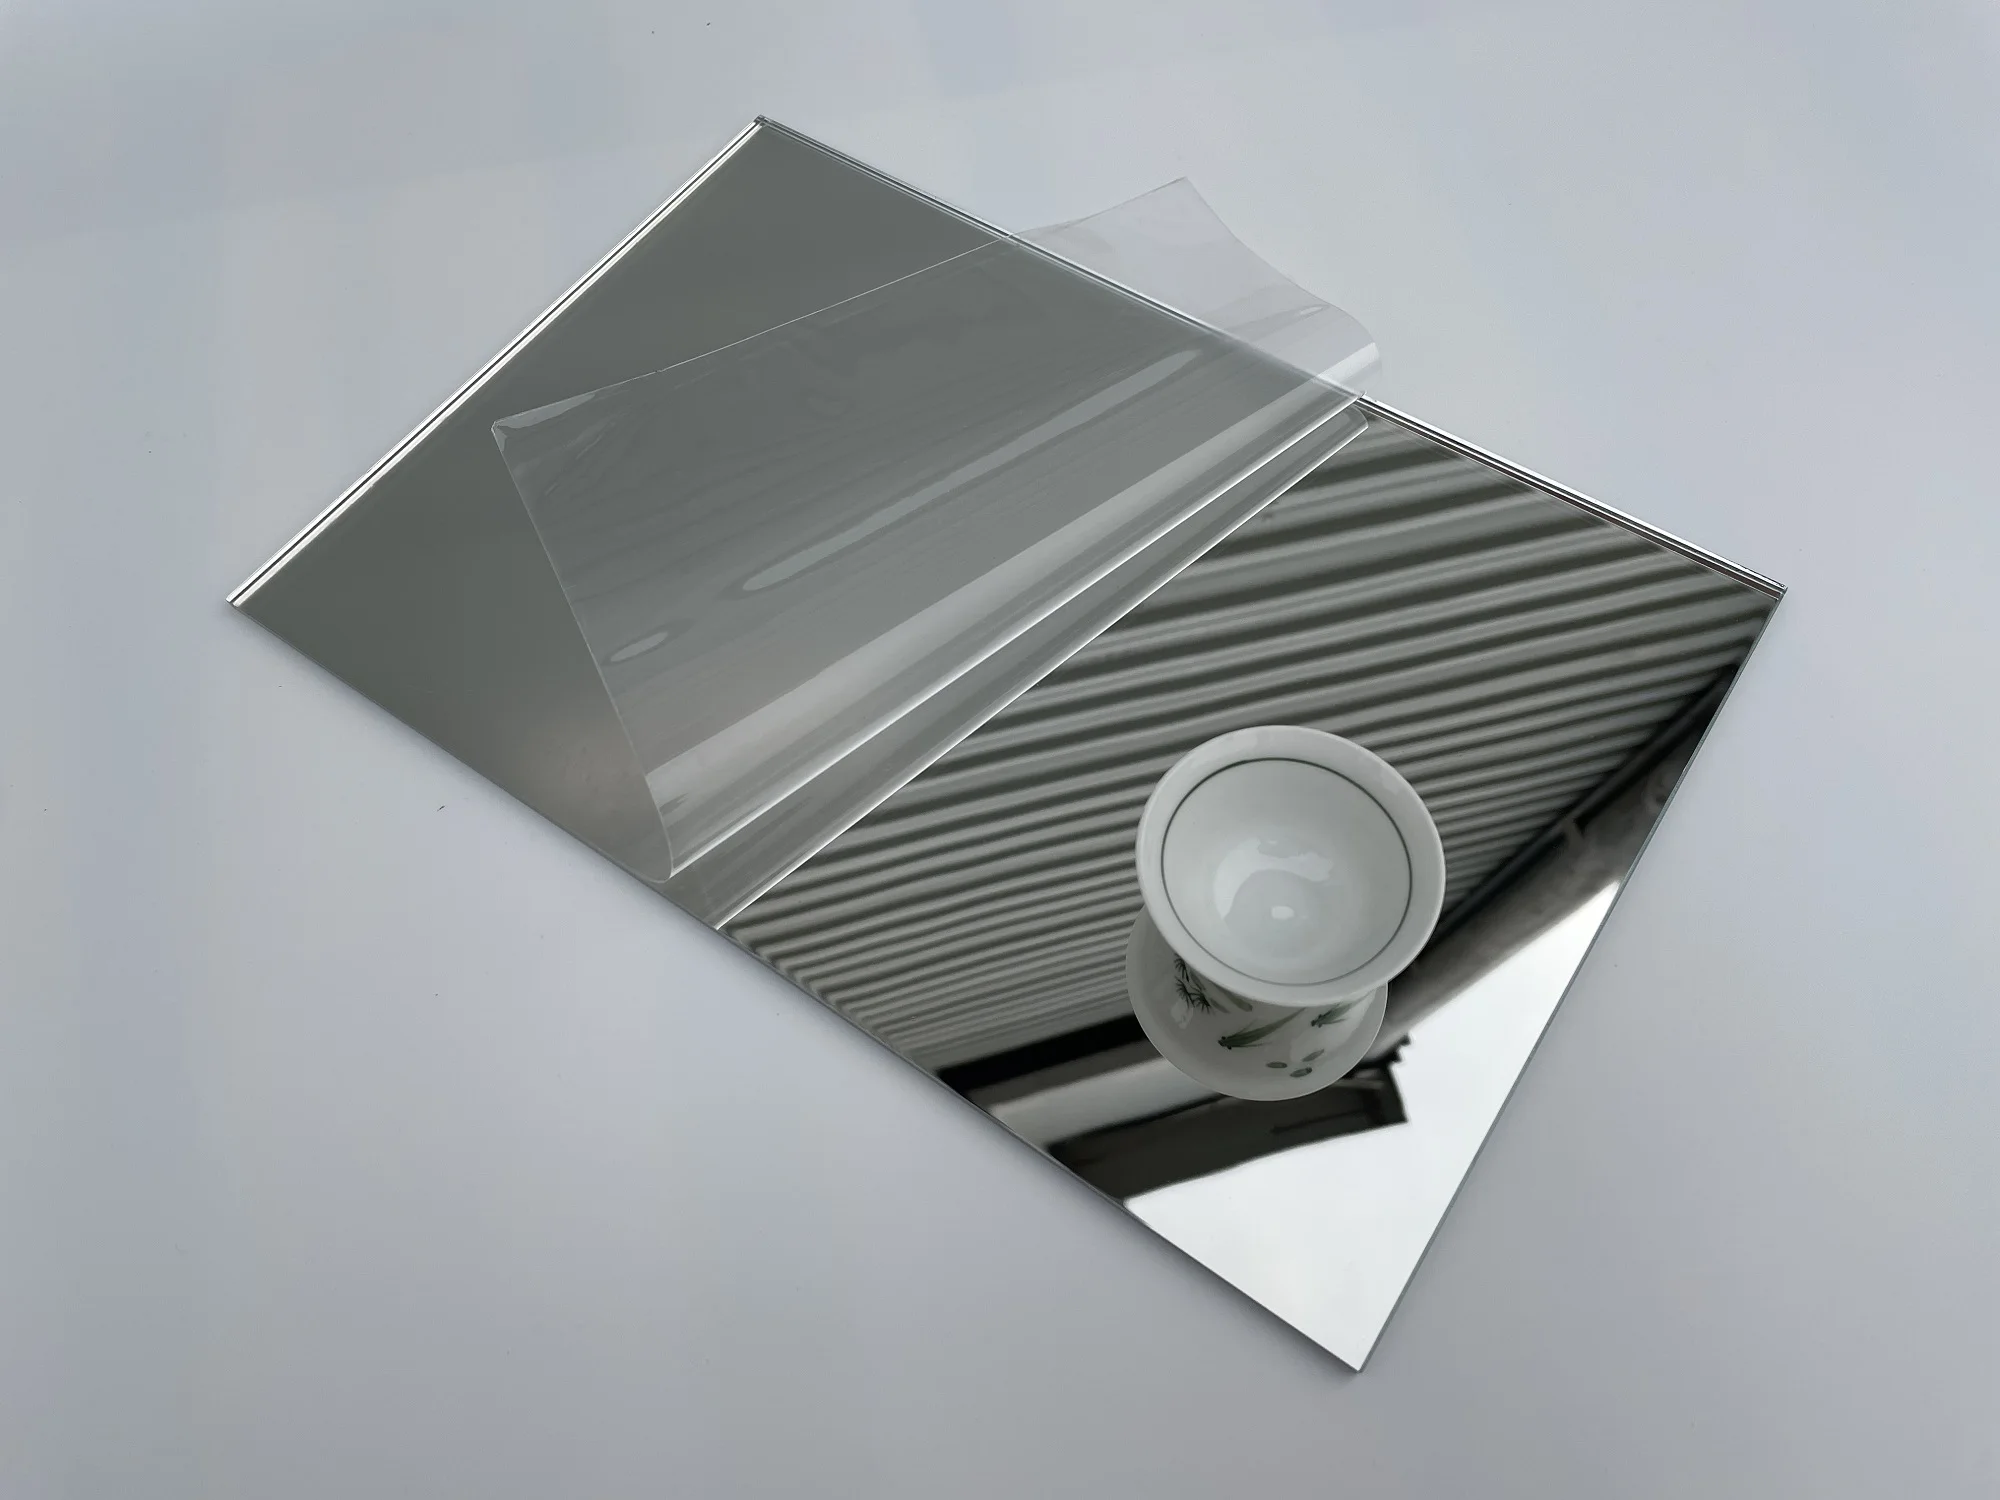 Rectangle Silver Acrylic Mirror Sheet Harmless For Wedding